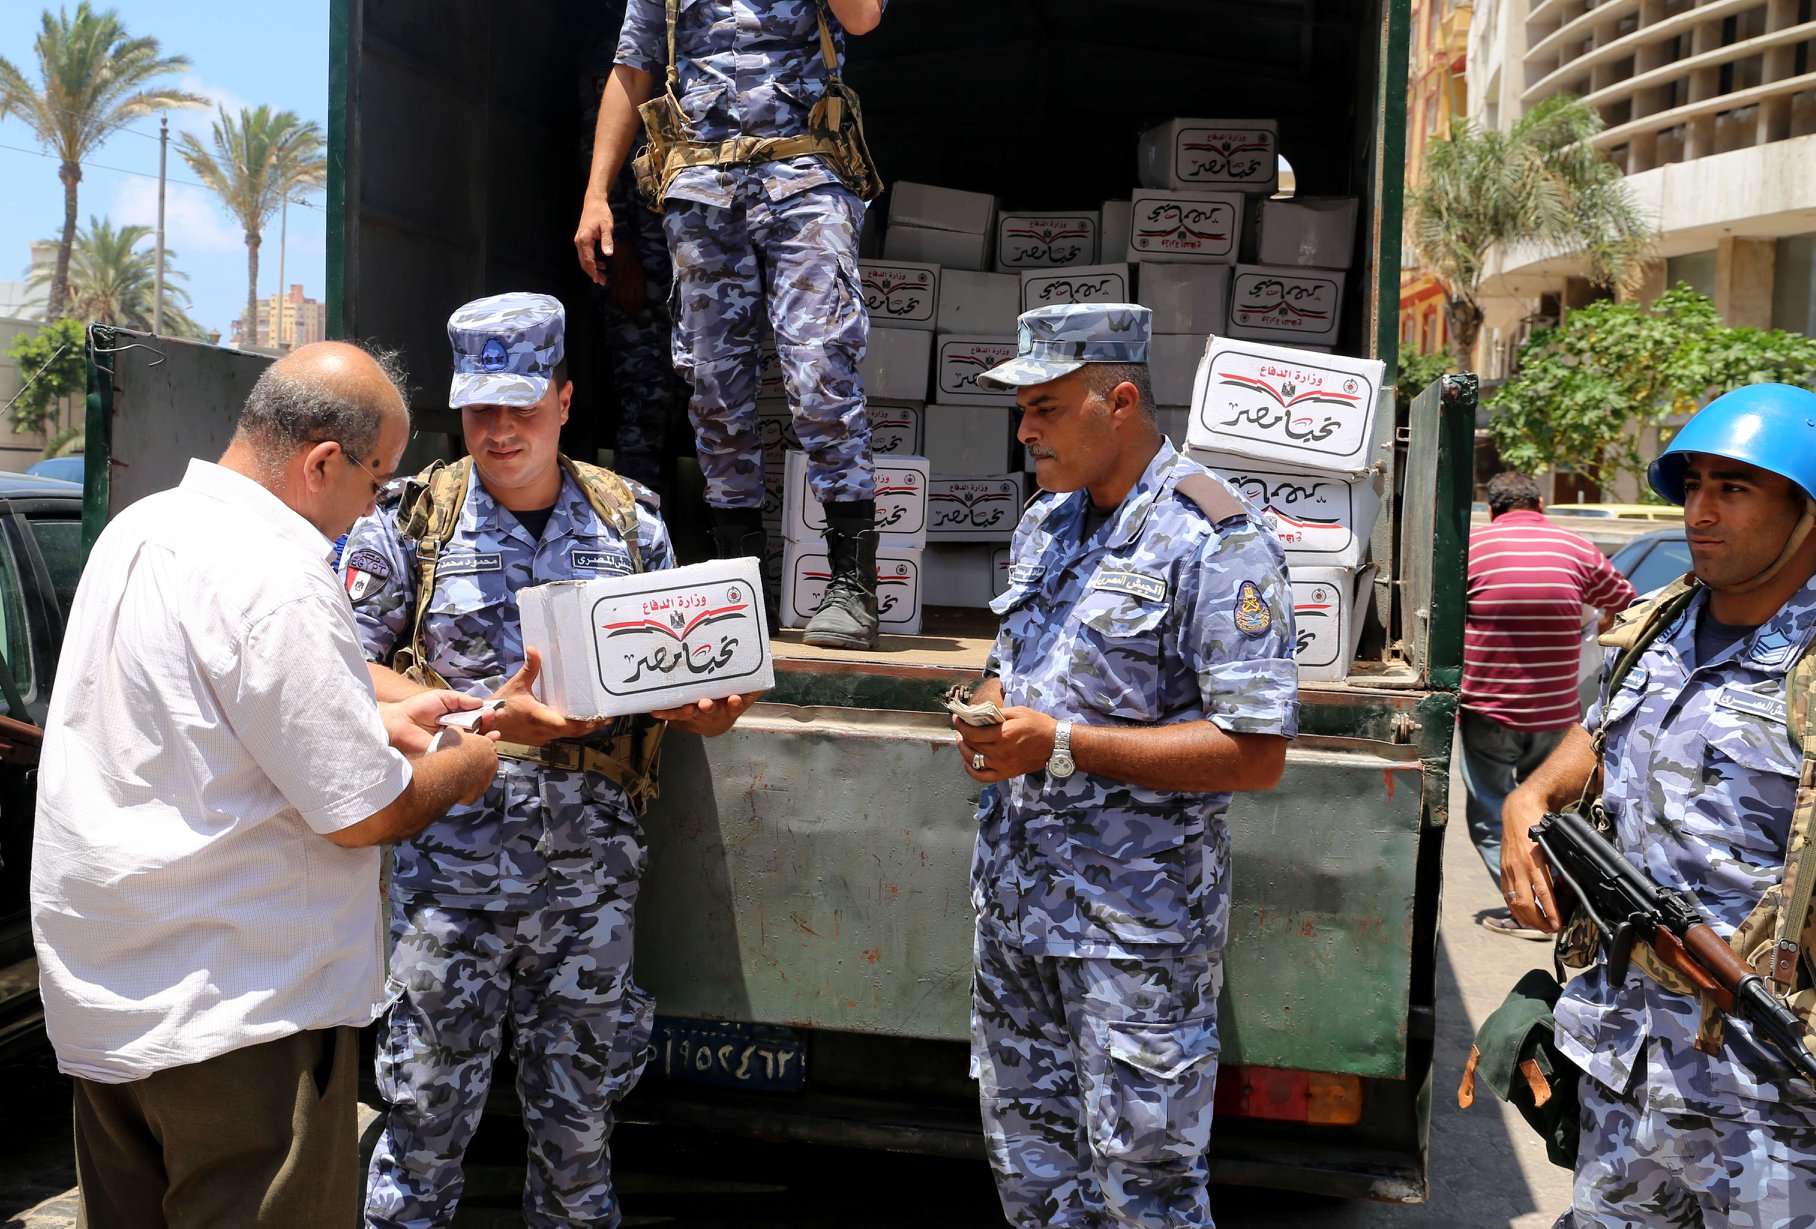   القوات المسلحة توزع مليون حصة غذائية قبل عيد الأضحى بنصف الثمن